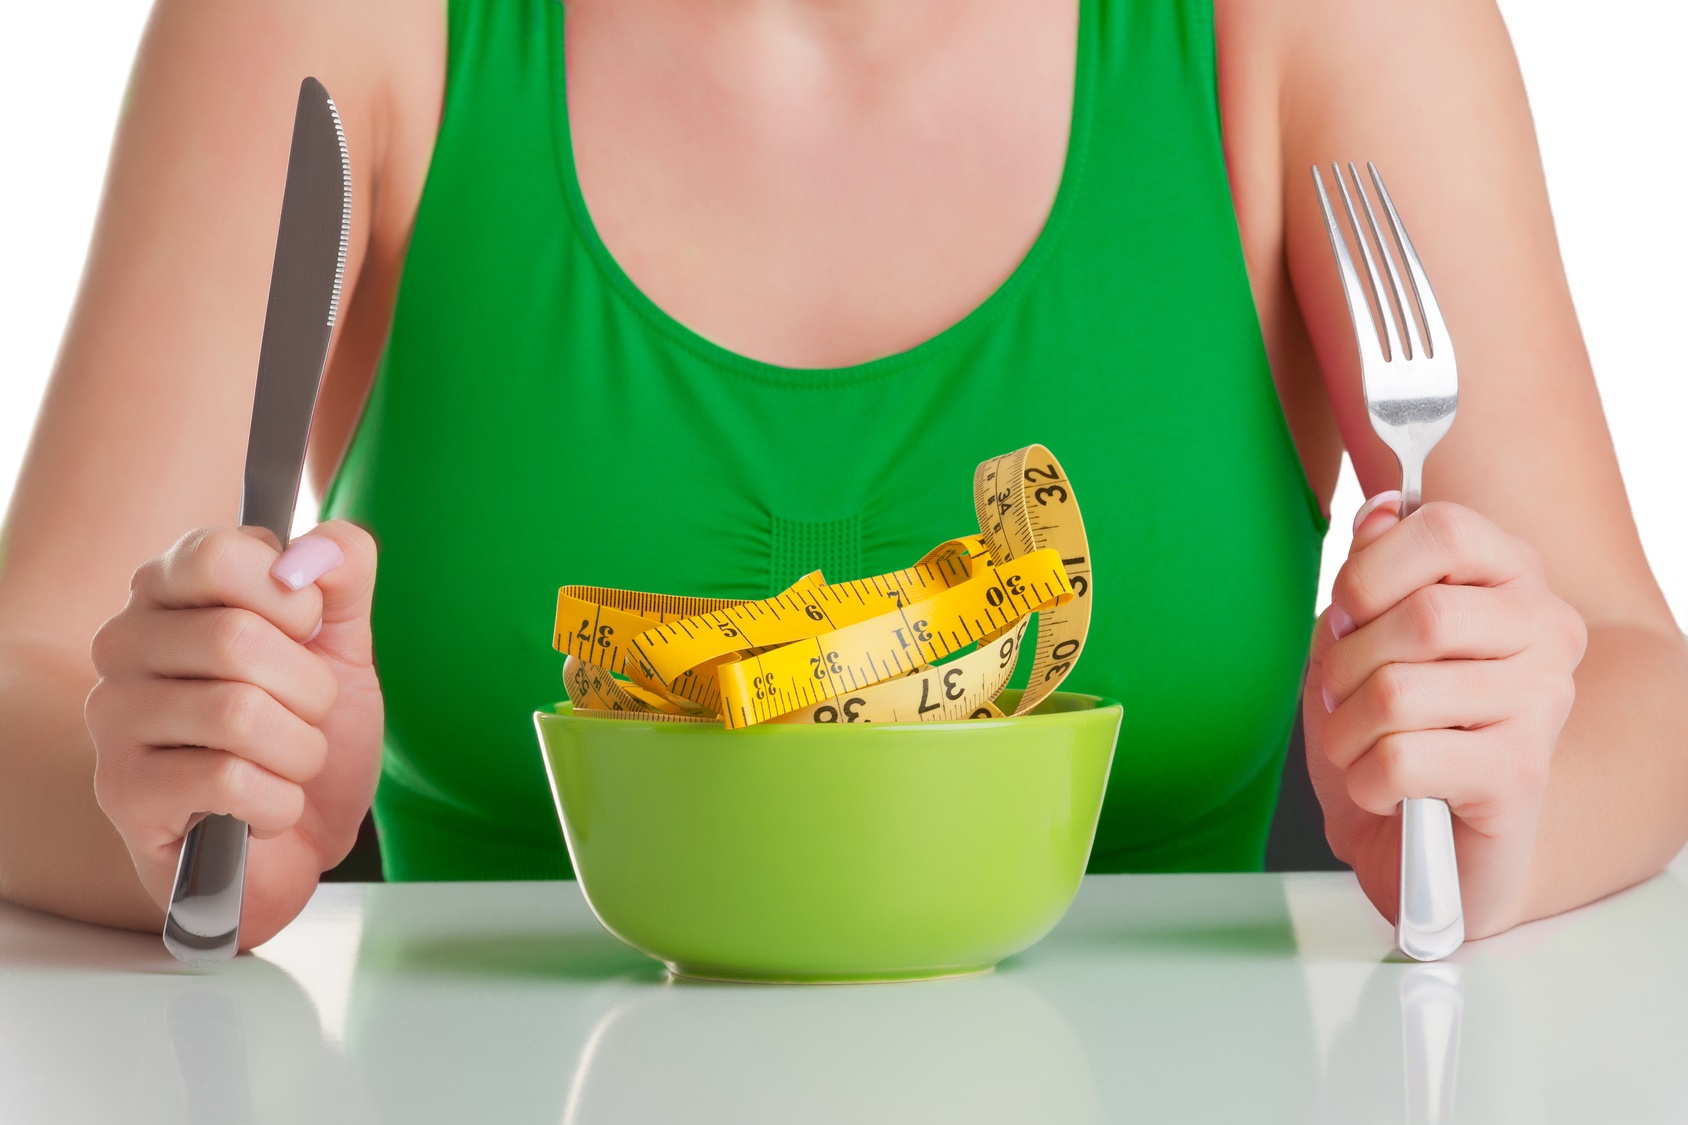 7 nap alatt 3 kiló fogyás: vesd be az SOS diétát!